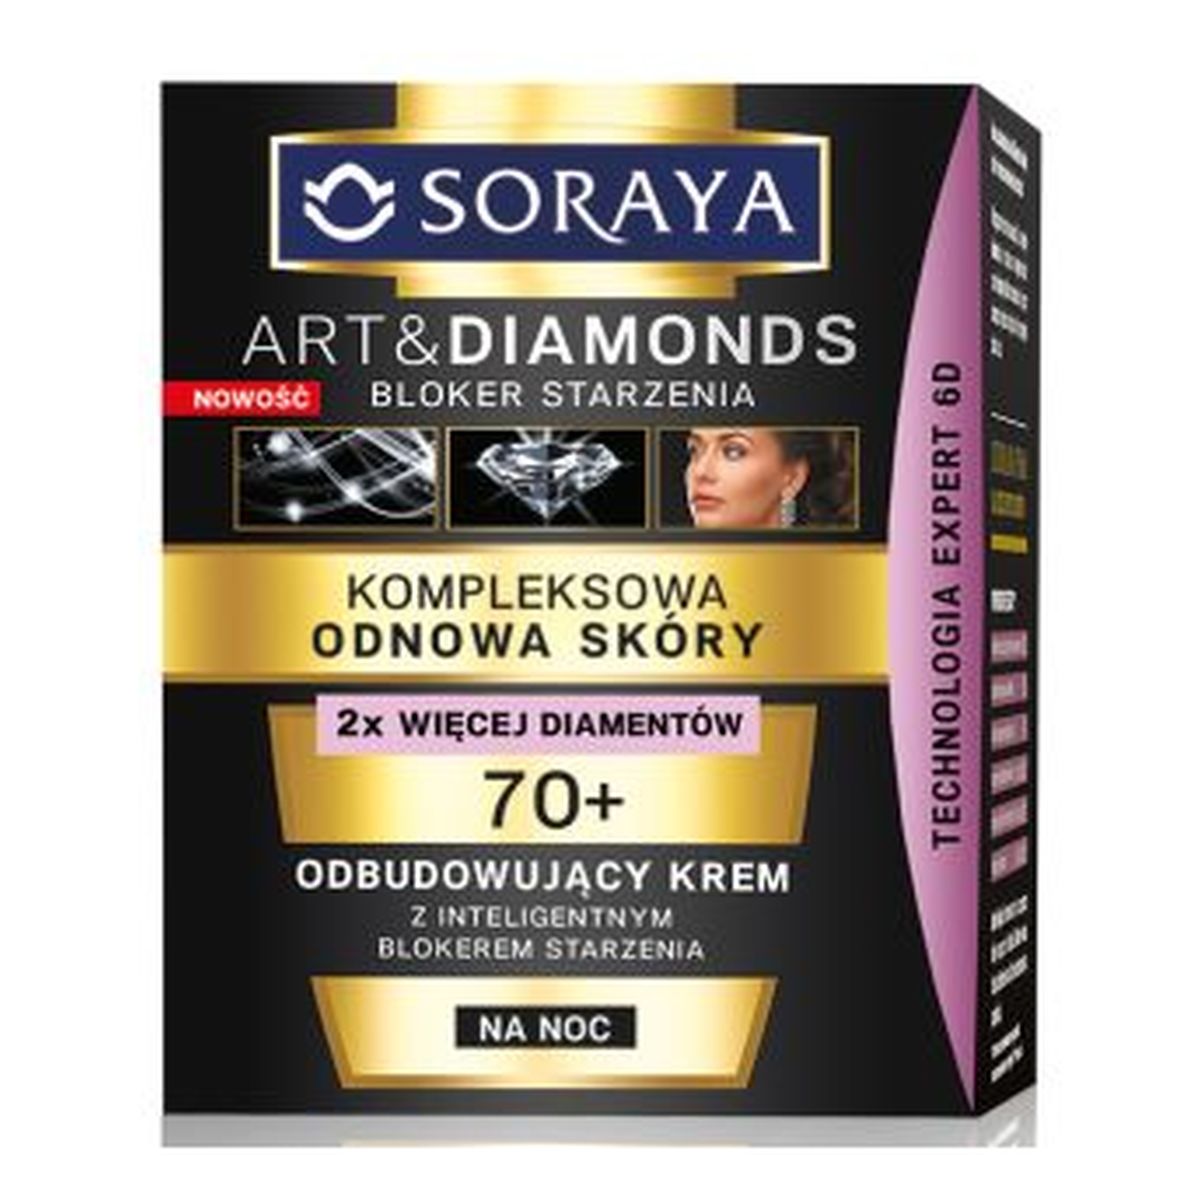 Soraya Art & Diamonds Odbudowujący Krem Na Noc 50ml